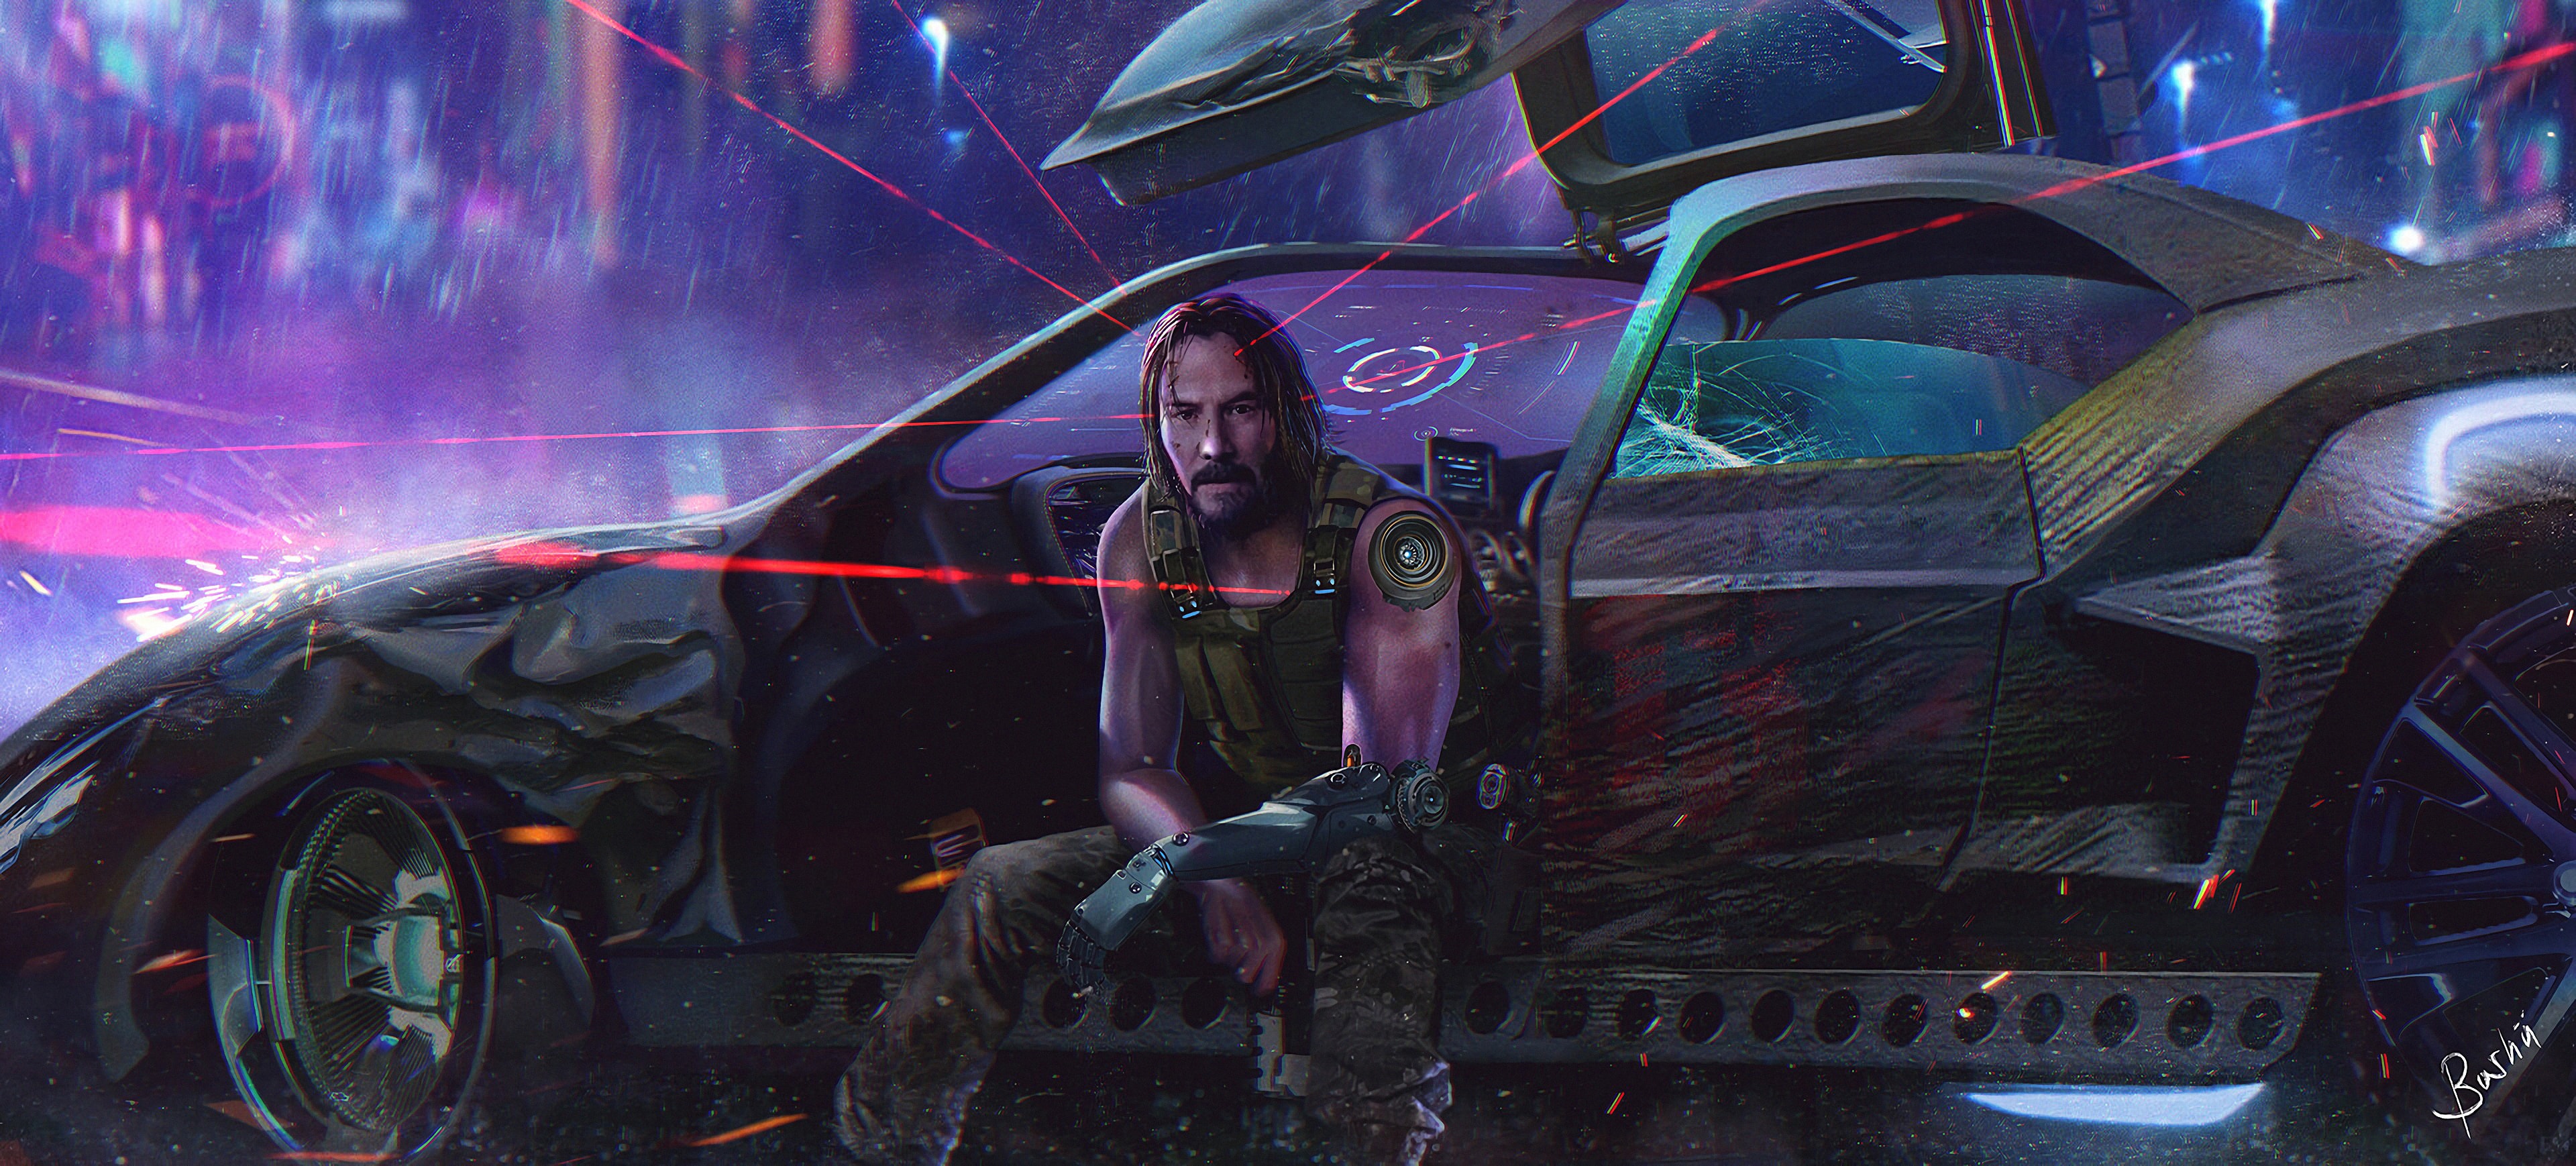 Keanu Reeves Romantic Cyberpunk 2077 Wallpapers